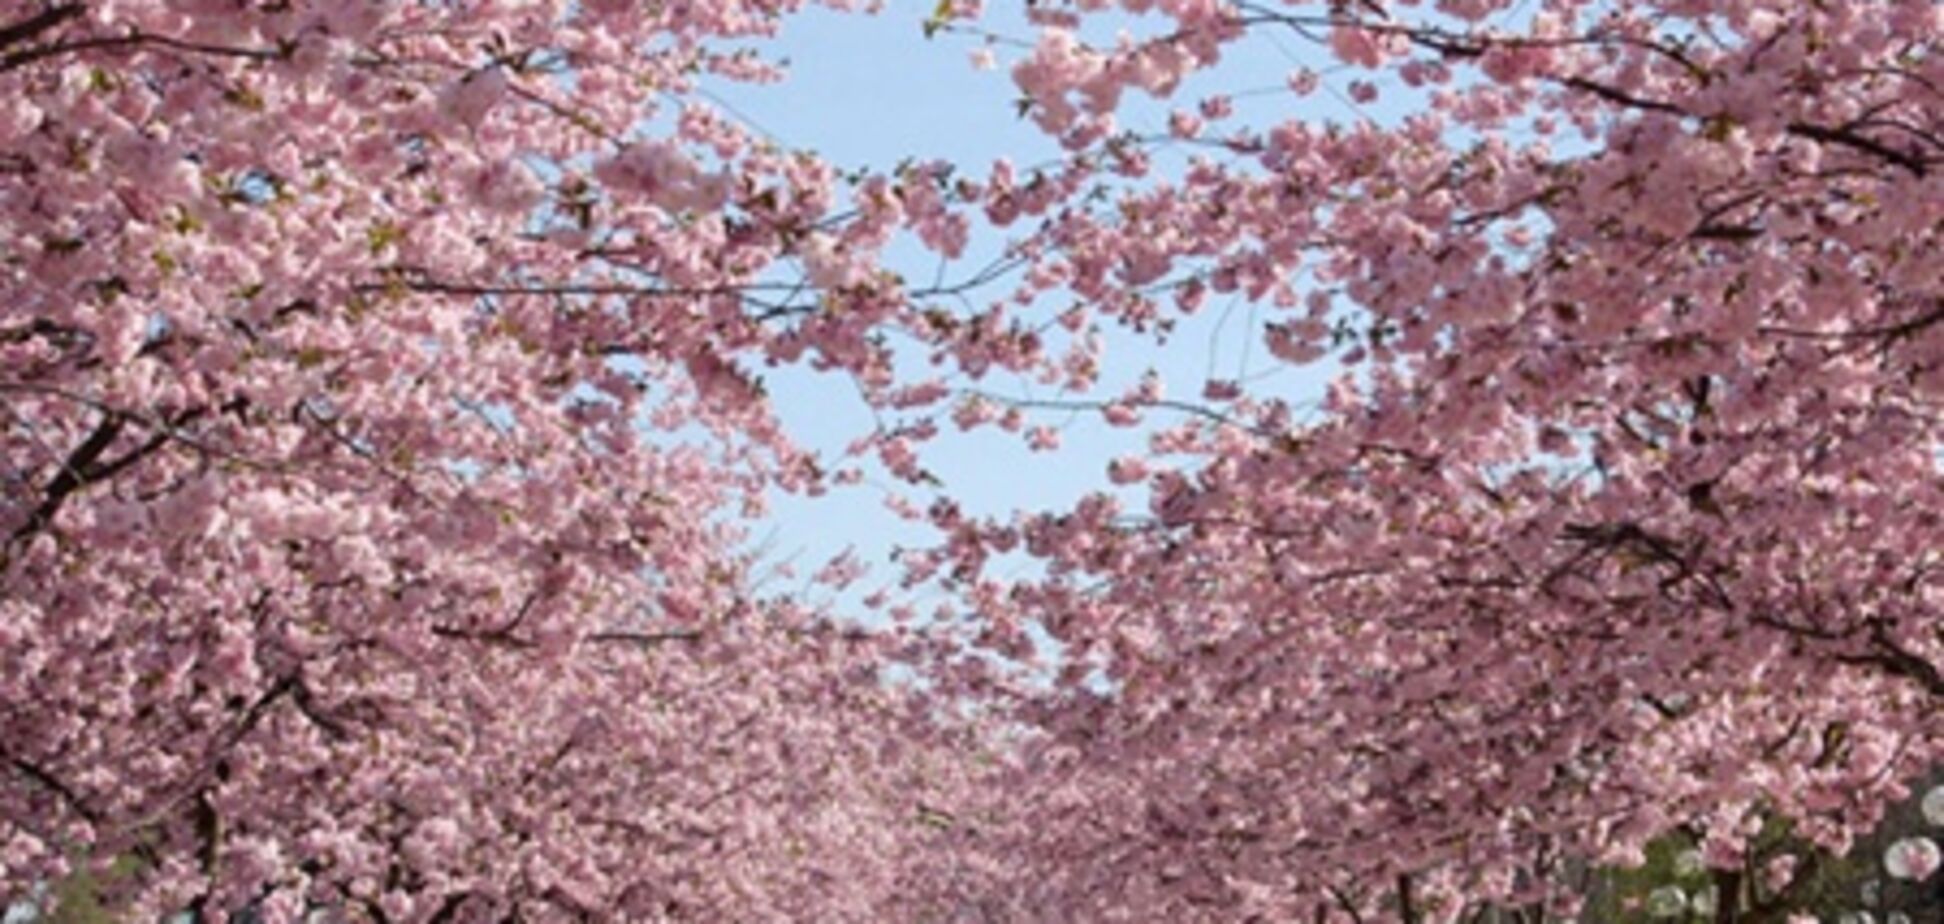 Япония ждет туристов на сезон цветения сакуры